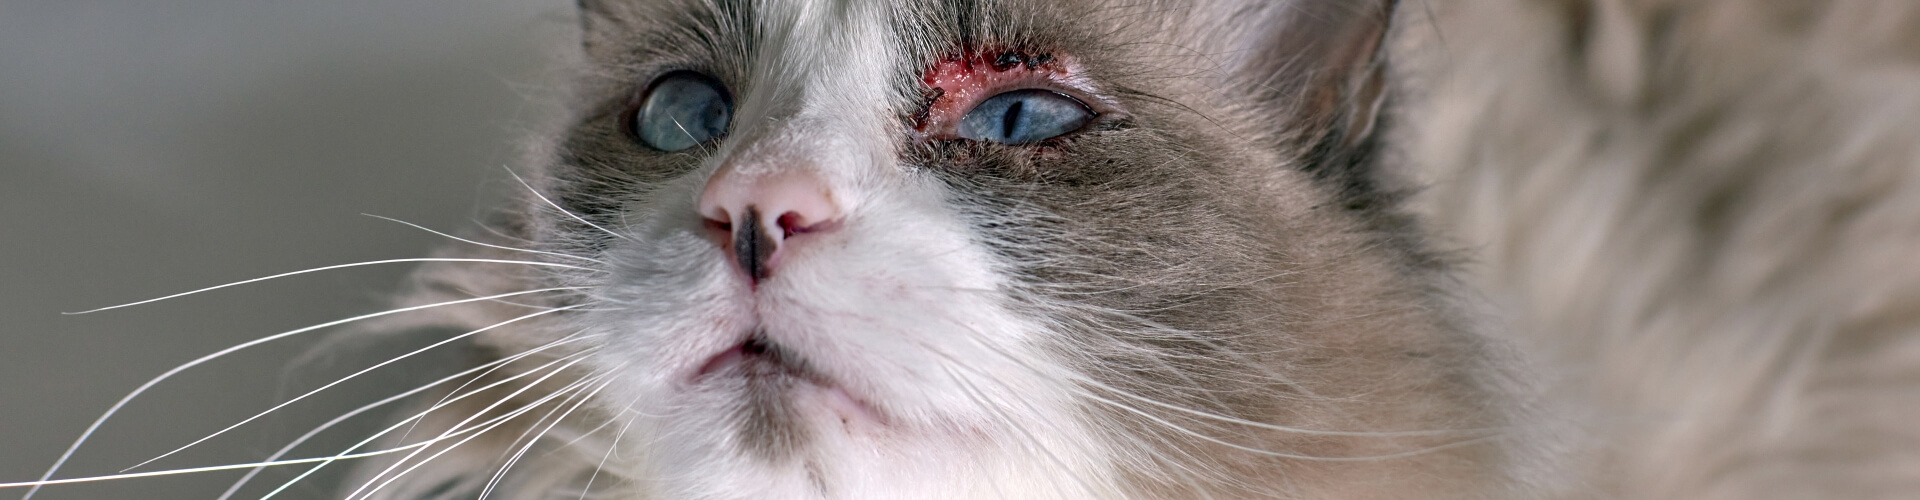 Verletzungen am Katzenauge - Wann muss ich zum Tierarzt? - PETPROTECT